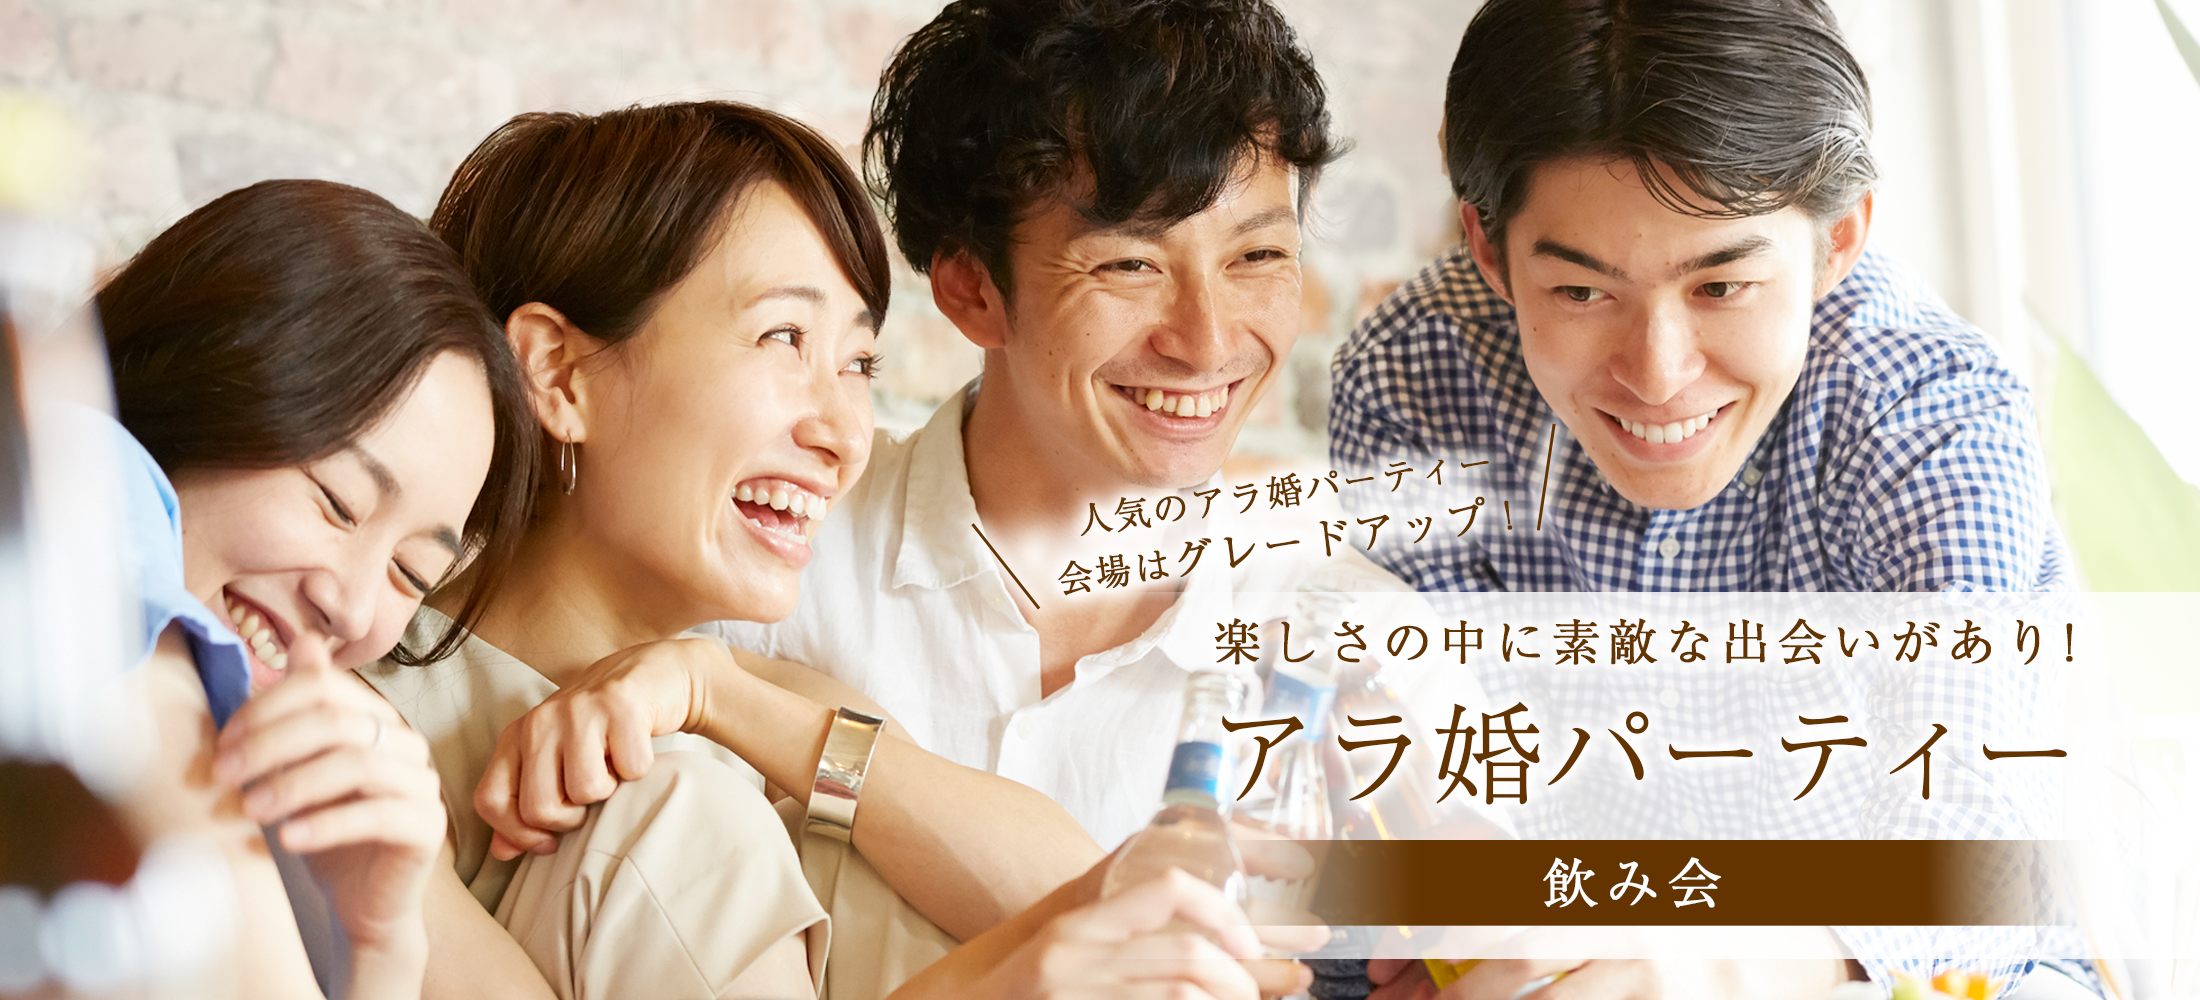 大阪で飲み会サークルなら アラ婚 30代 40代出会いを応援